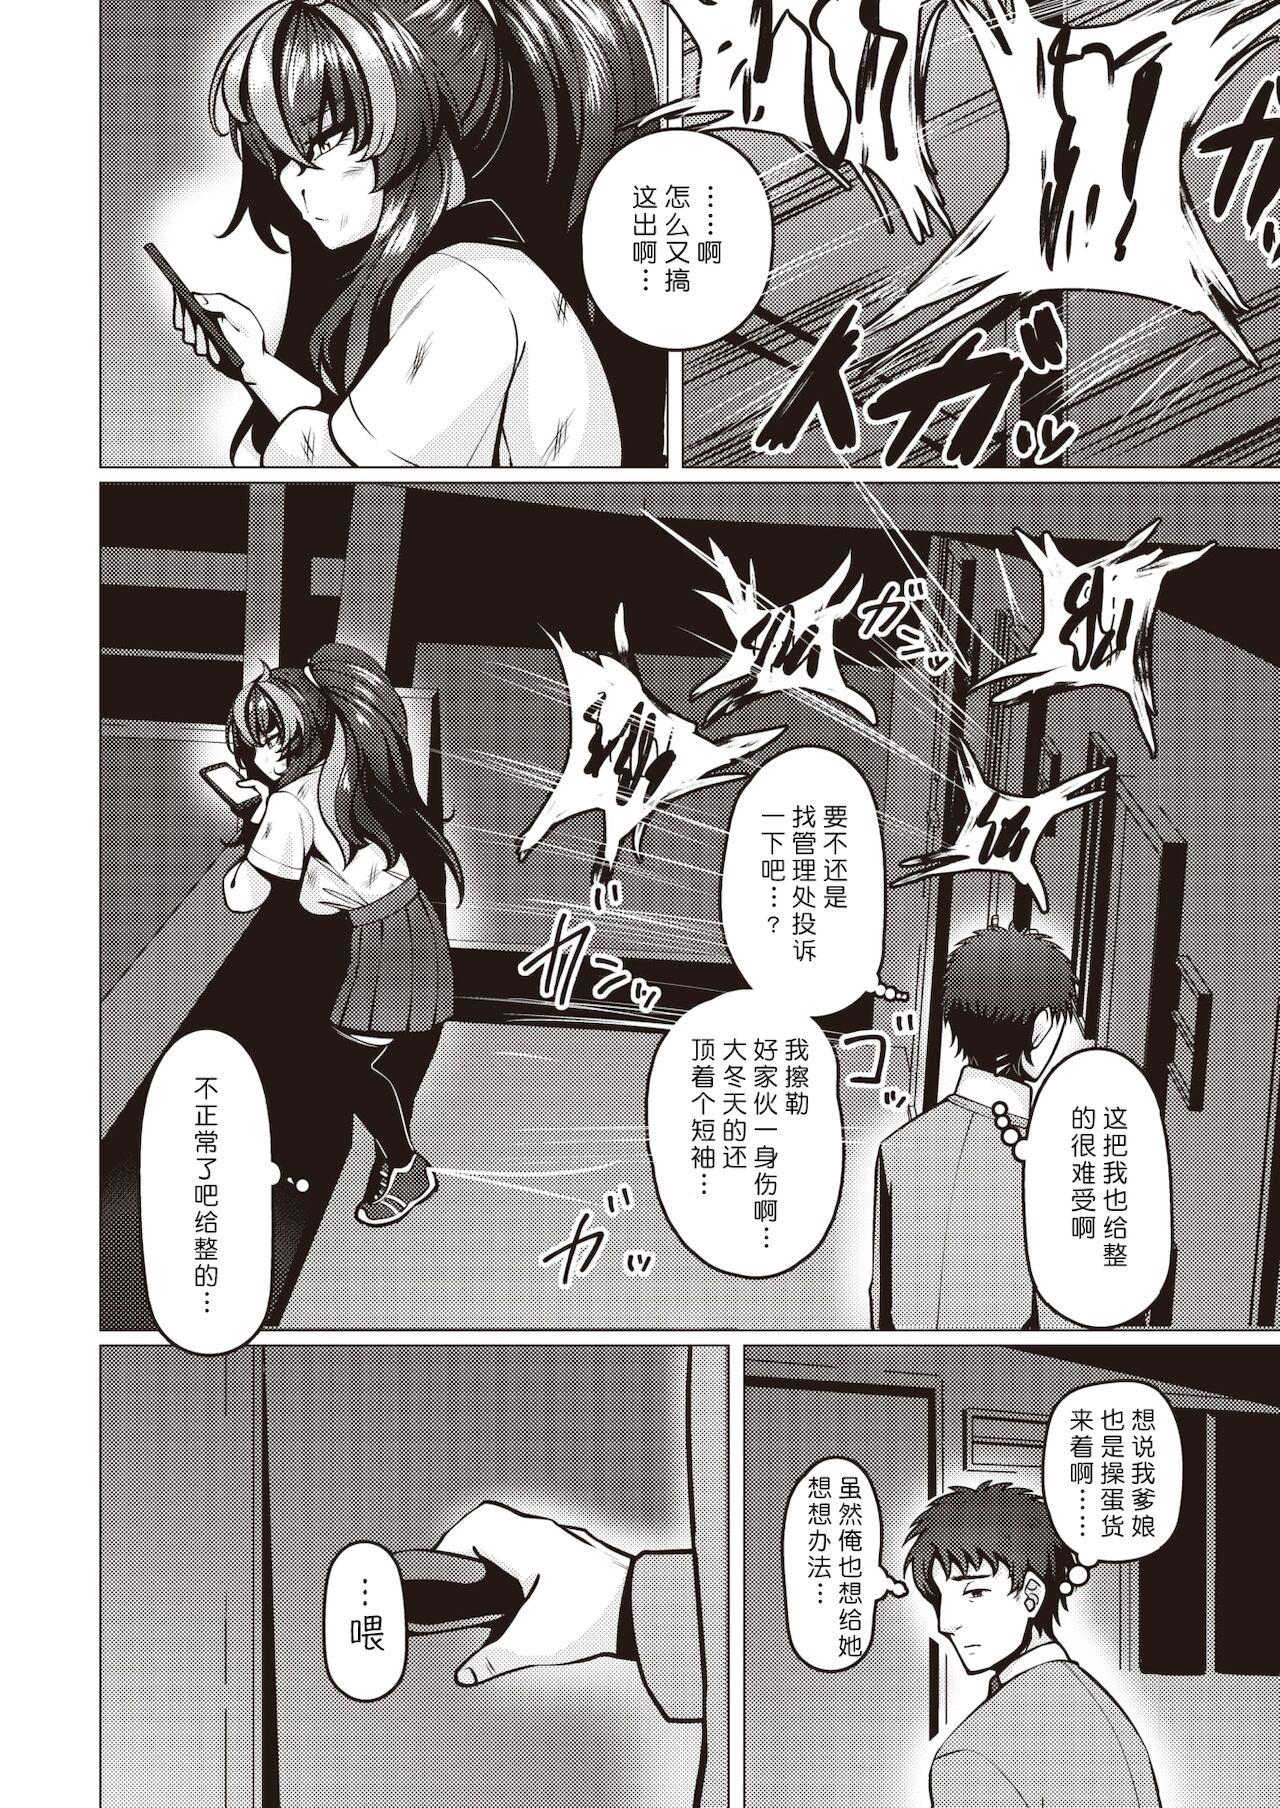 Cartoon Warui Ko Yaehata-san Scene - Page 4